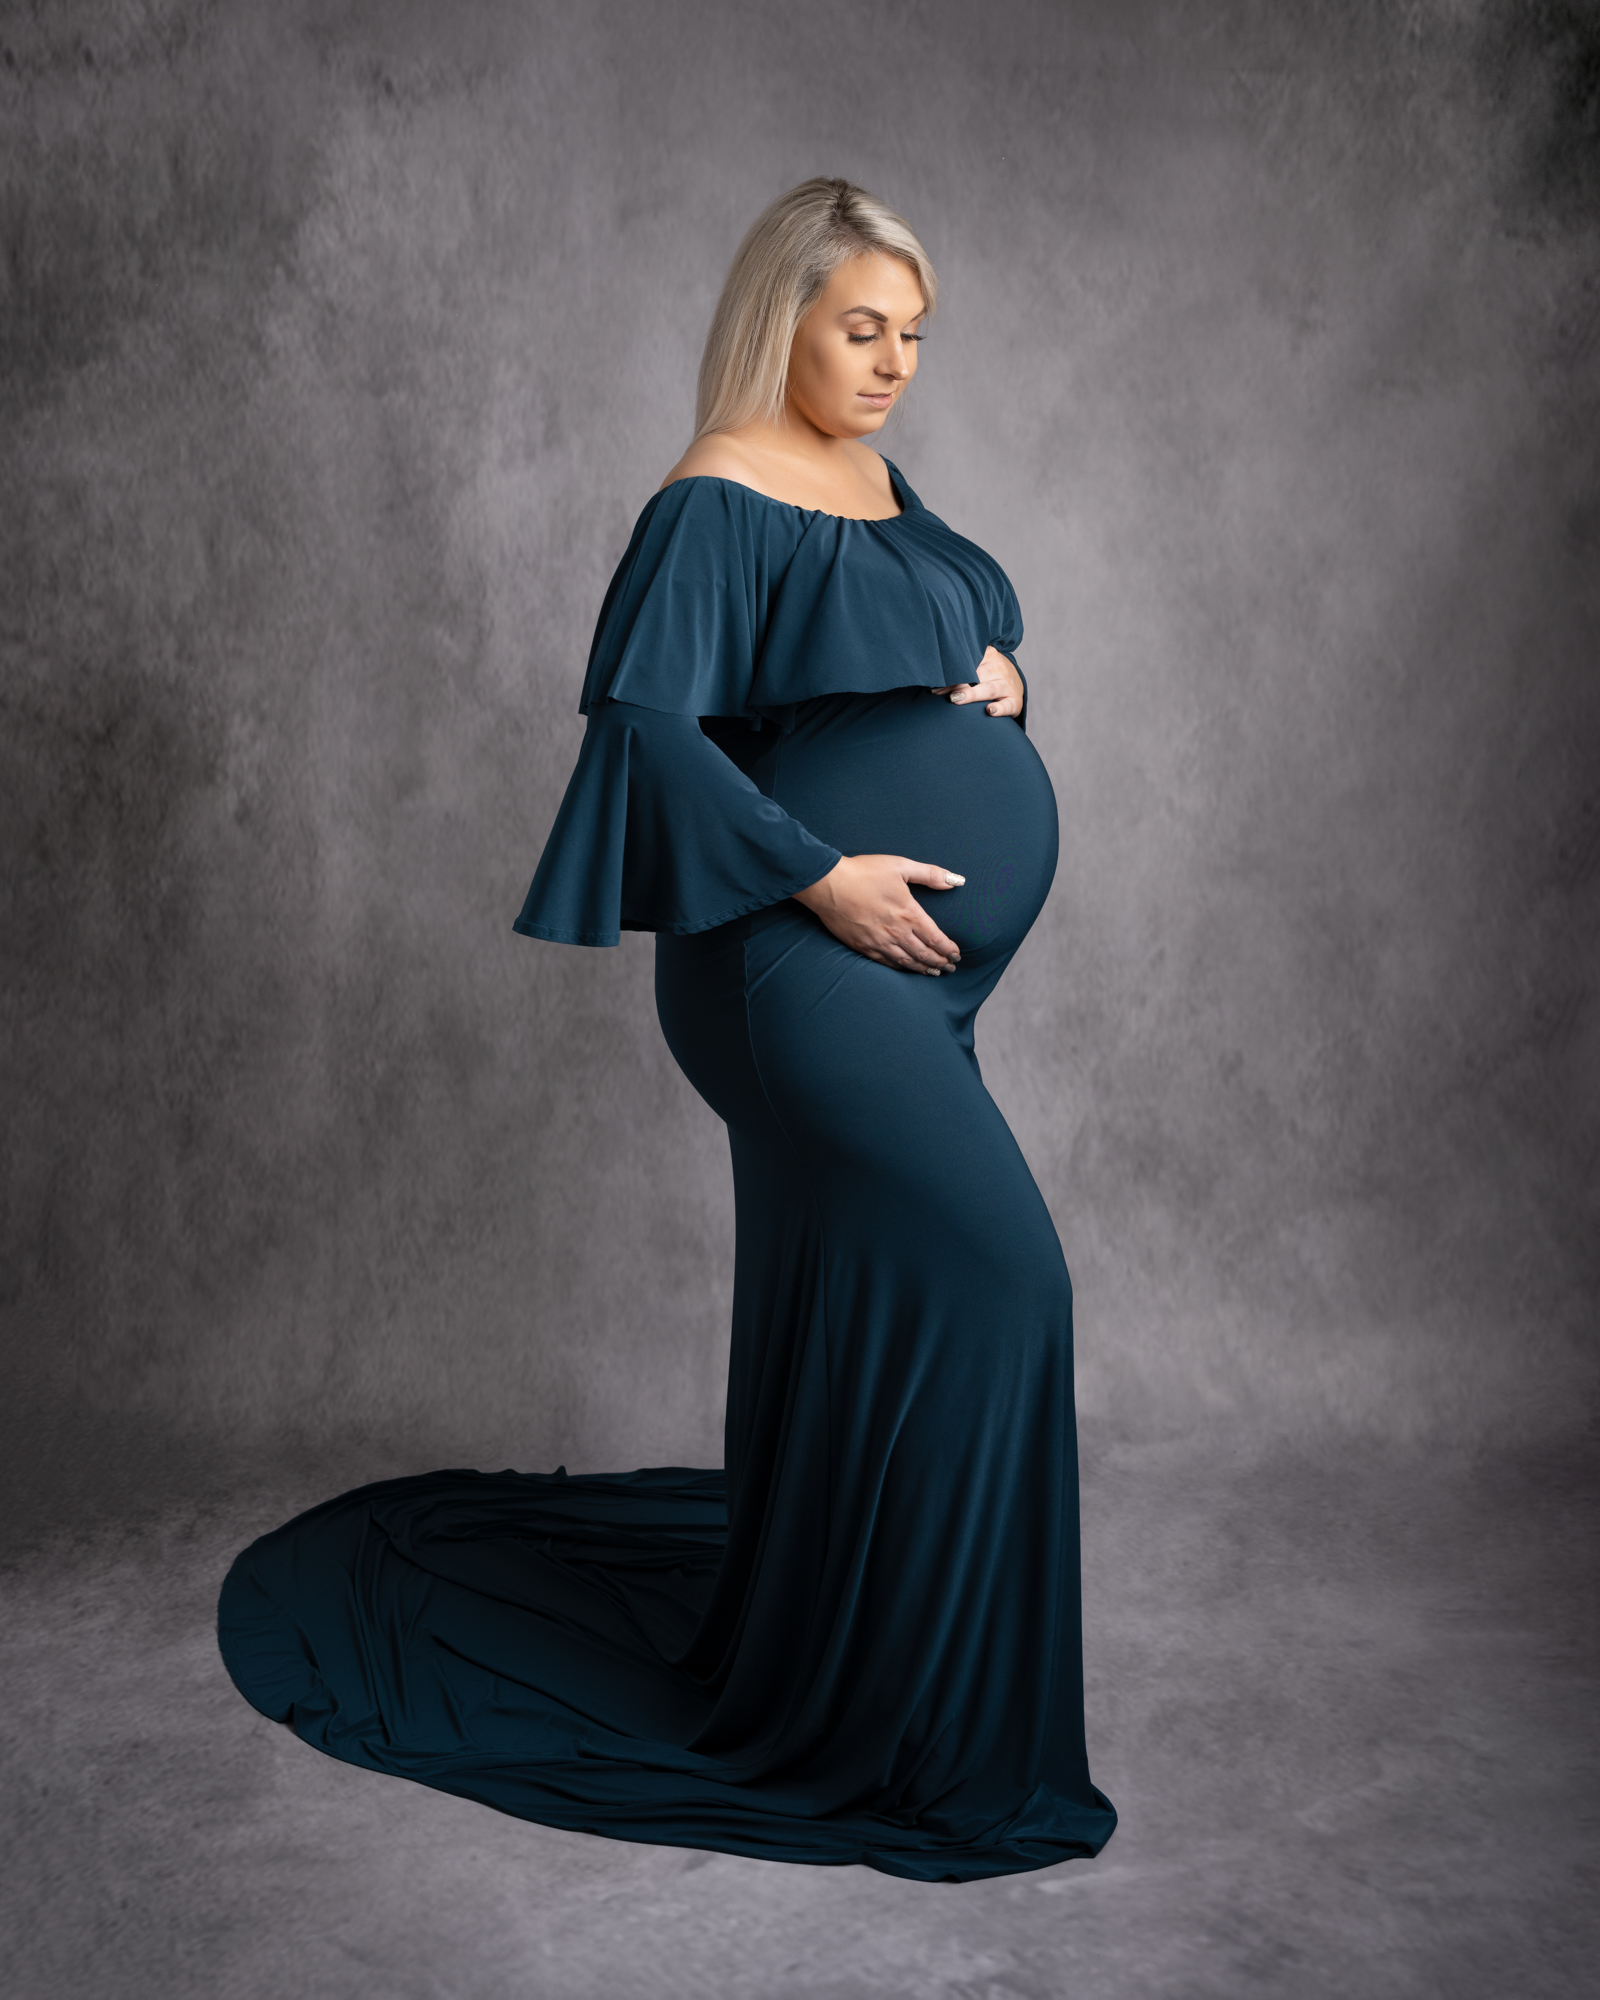 pregnancy_photo_studio_photography